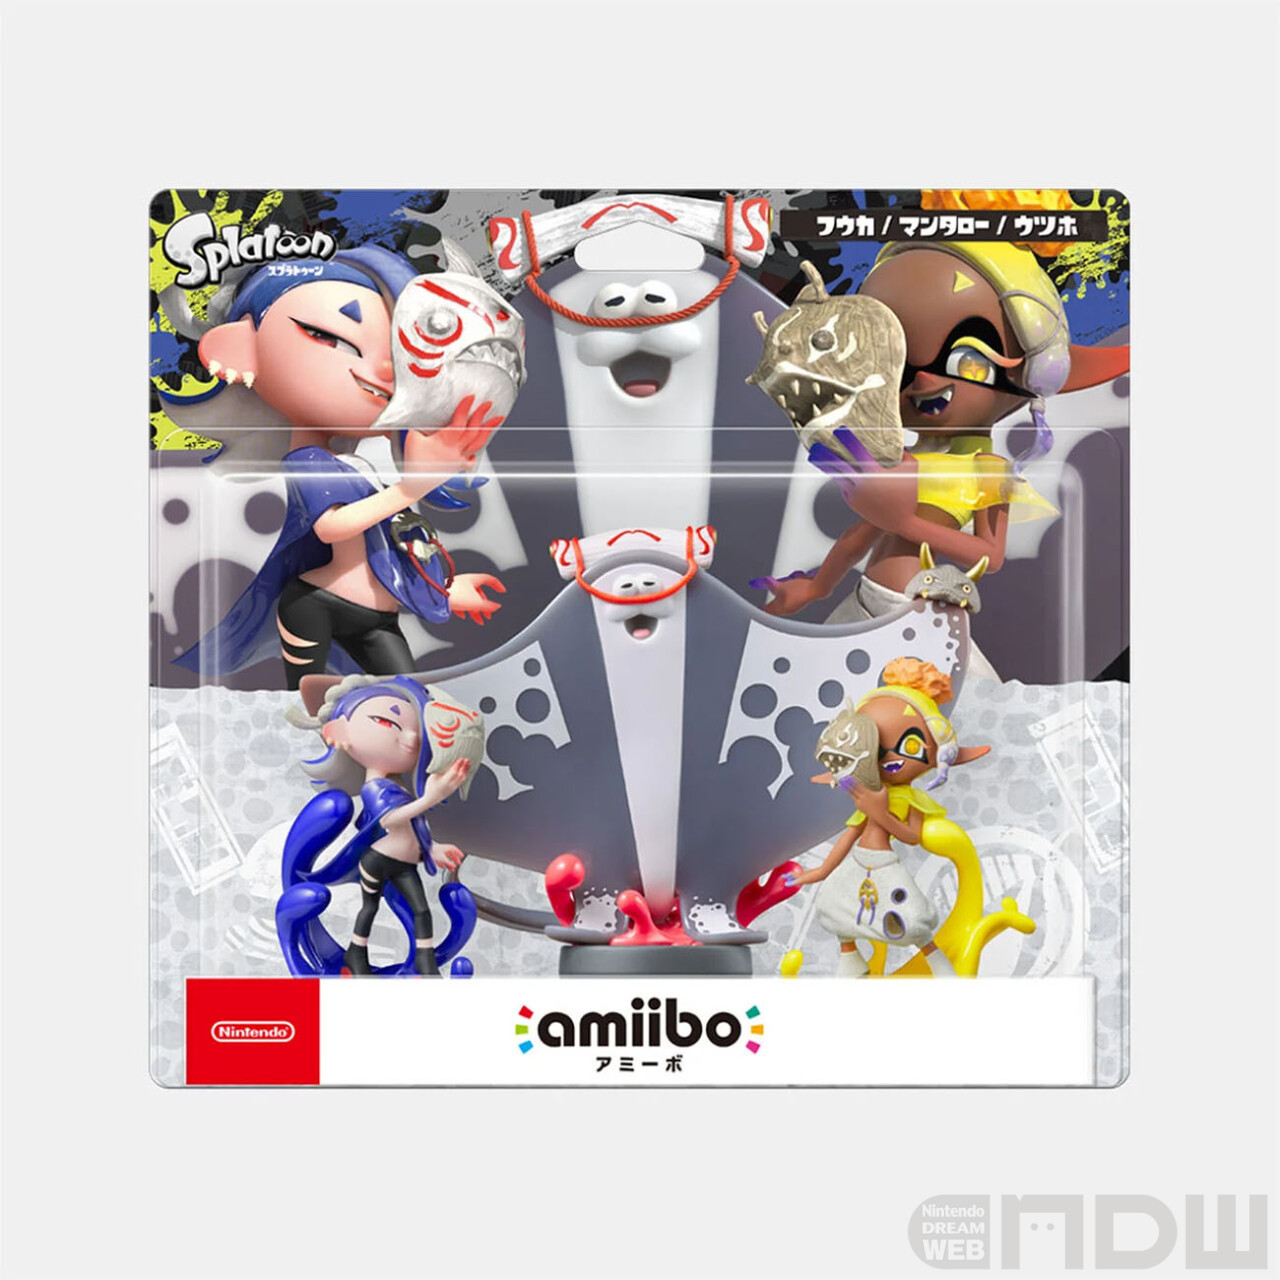 スプラトゥーン3』すりみ連合のamiiboが11月17日発売決定！ – Nintendo 